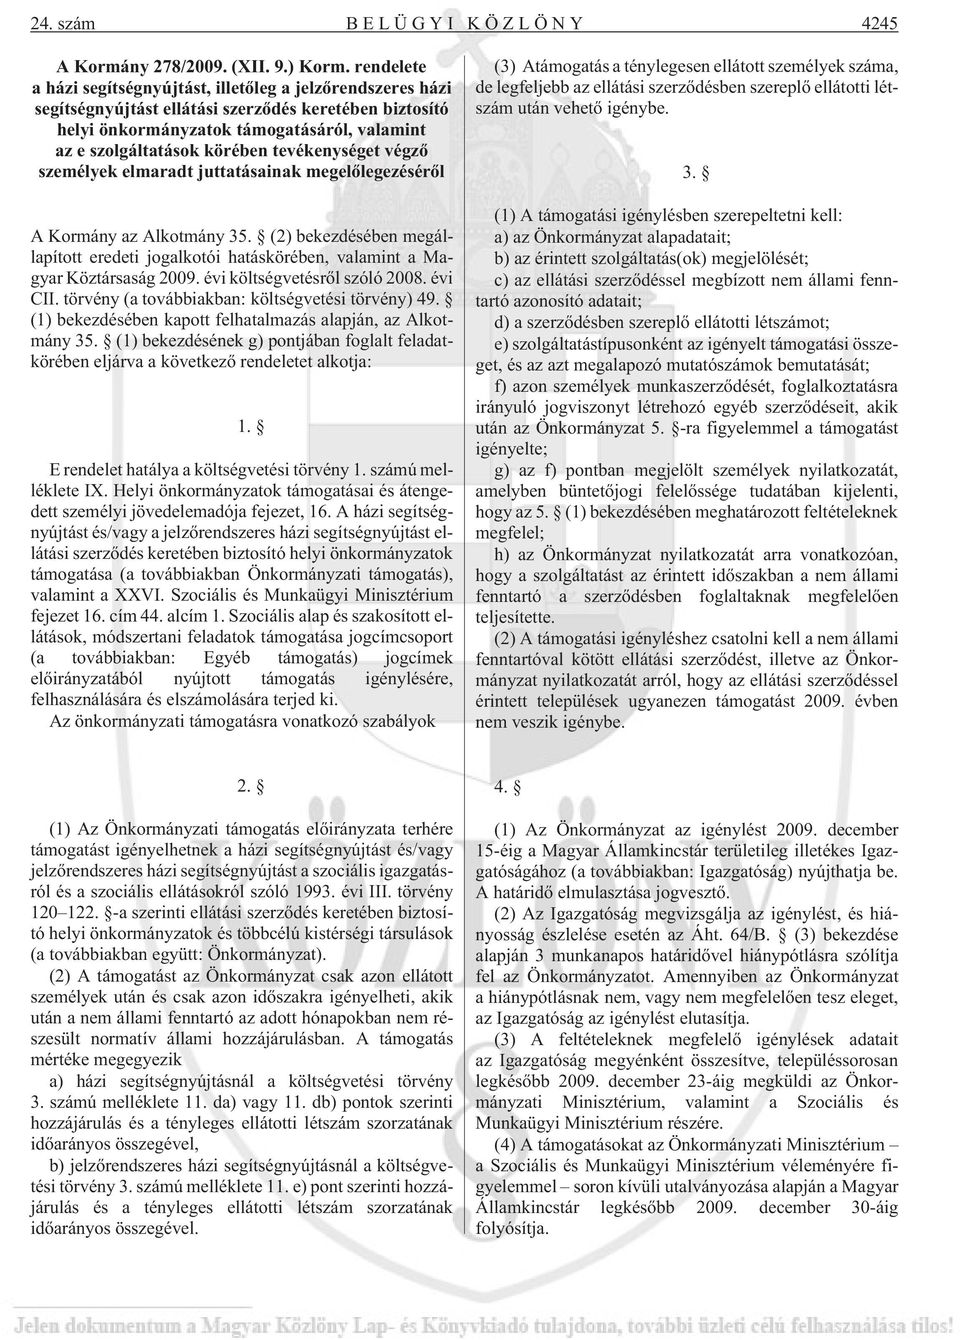 tevékenységet végzõ személyek elmaradt juttatásainak megelõlegezésérõl A Kormány az Alkotmány 35. (2) bekezdésében megállapított eredeti jogalkotói hatáskörében, valamint a Magyar Köztársaság 2009.